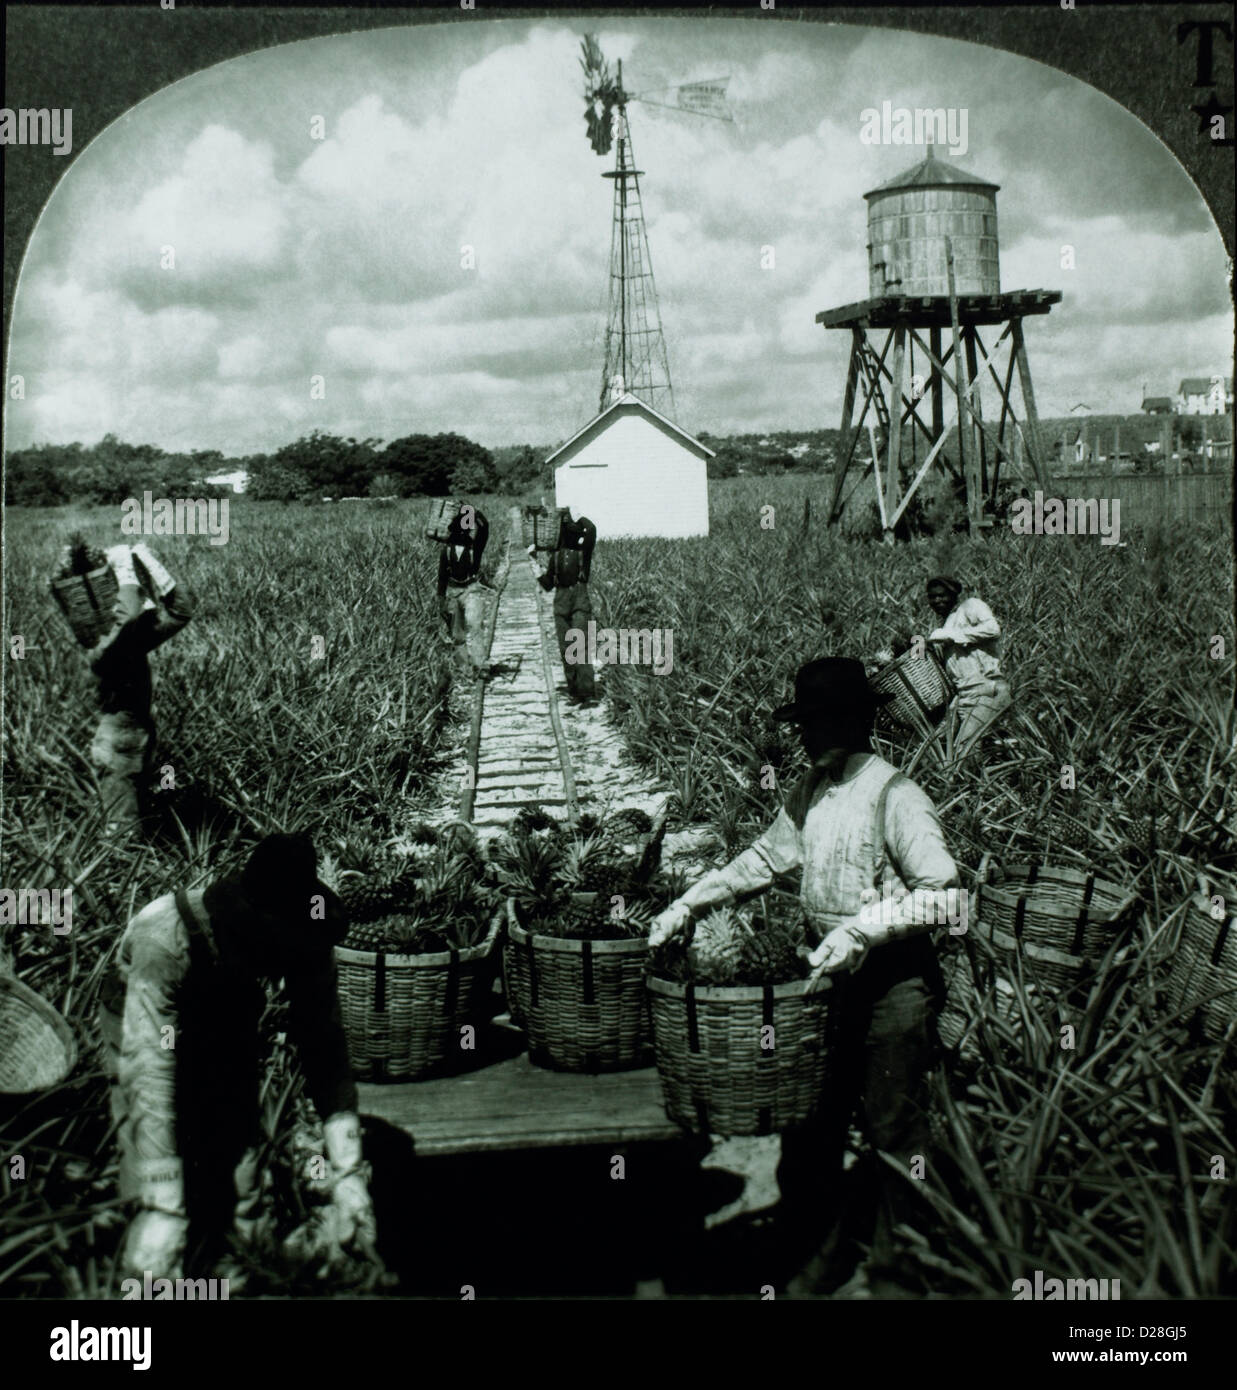 La récolte de l'ananas, des travailleurs, de la Floride, vers 1900 Photographie stéréo Banque D'Images